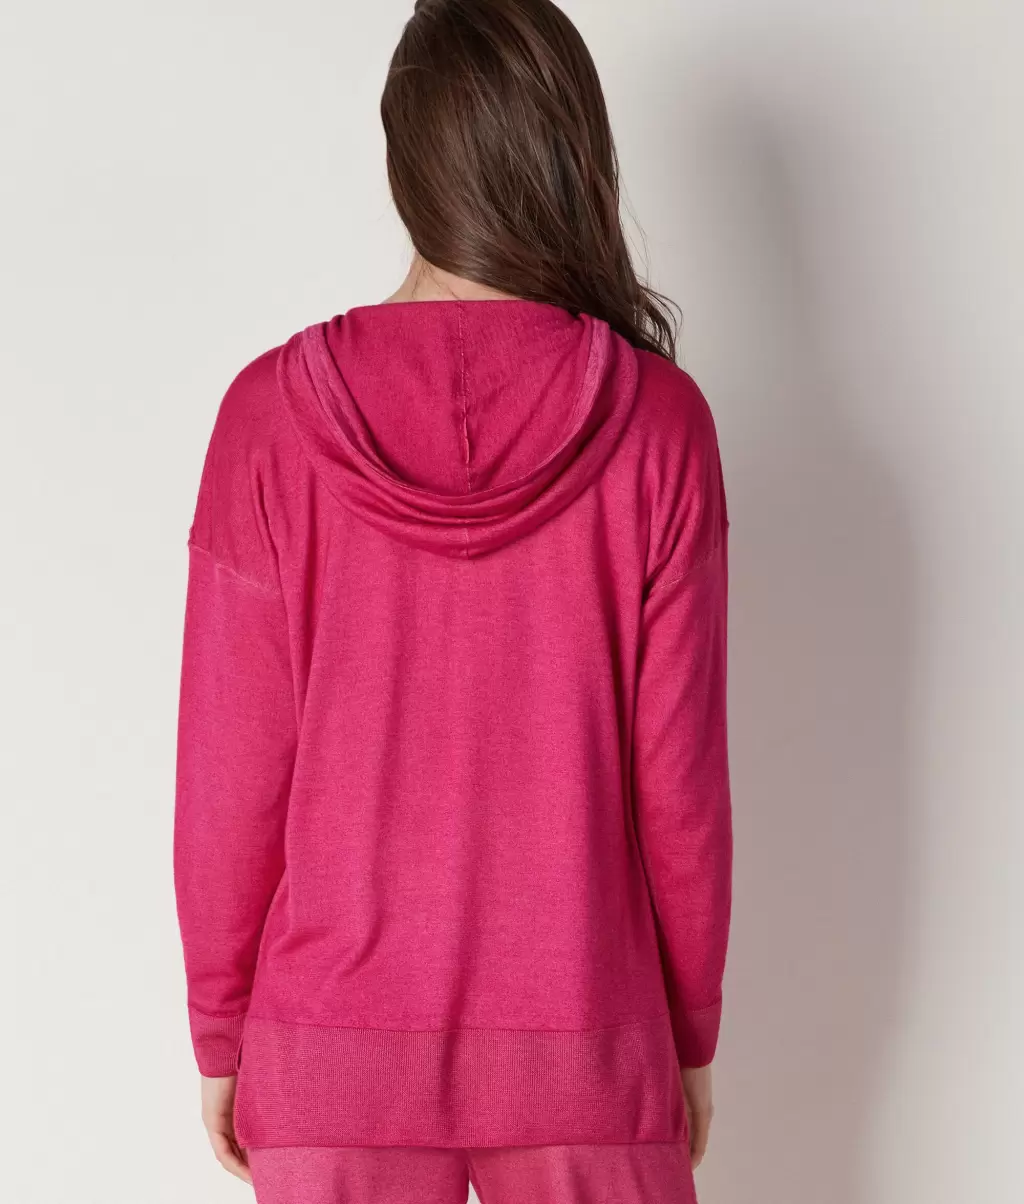 Falconeri Camisolas Felpa Pink Senhora Sweatshirt Com Fecho De Correr Em Ultrafine Cashmere - 2